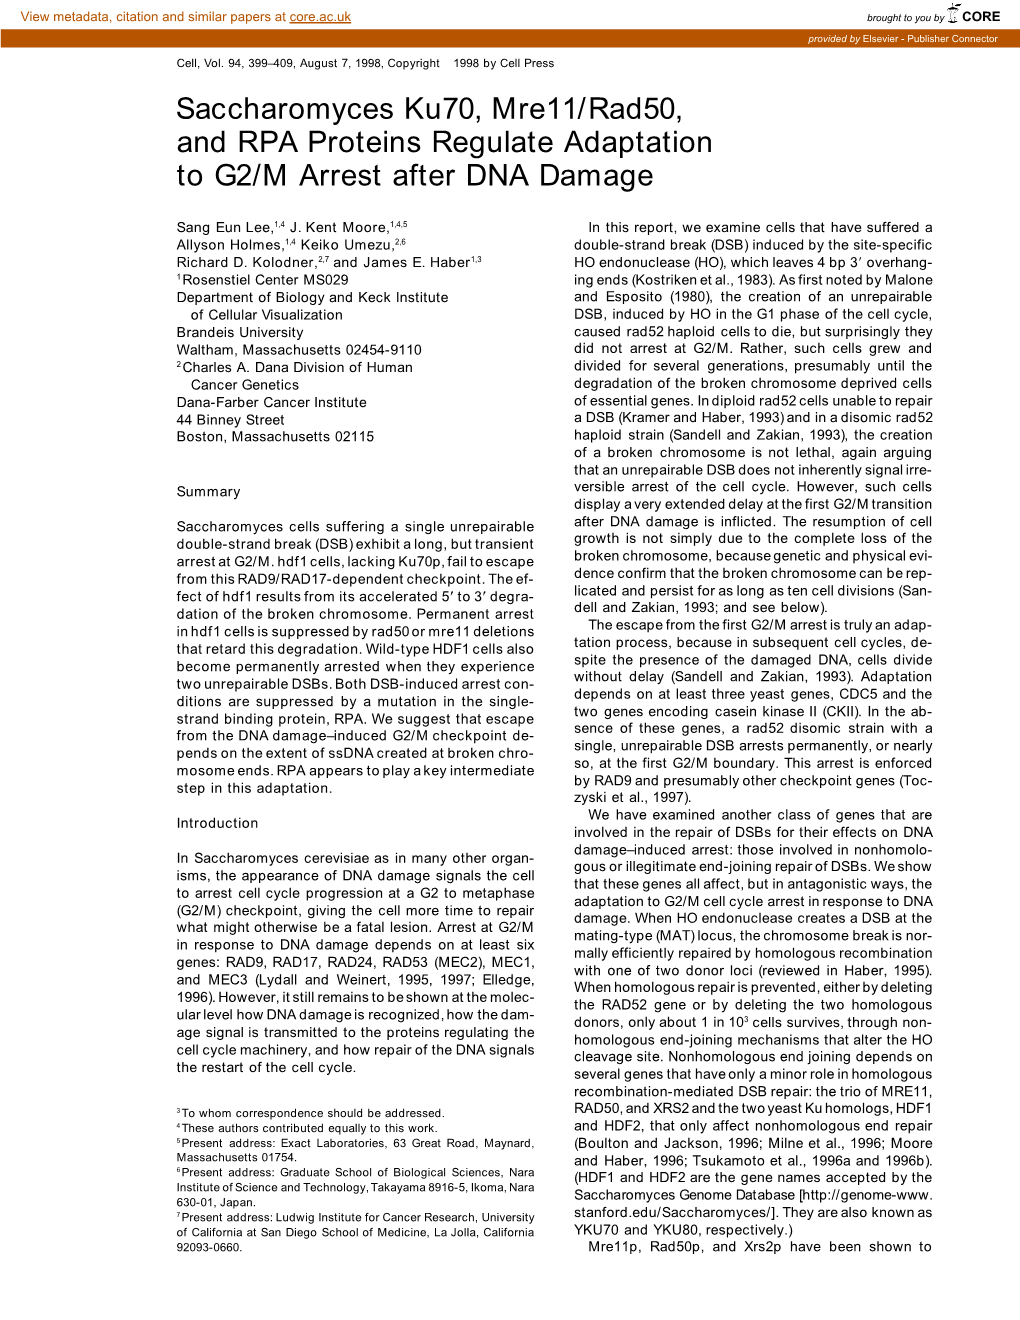 Saccharomyces Ku70, Mre11/Rad50, and RPA Proteins Regulate Adaptation to G2/M Arrest After DNA Damage